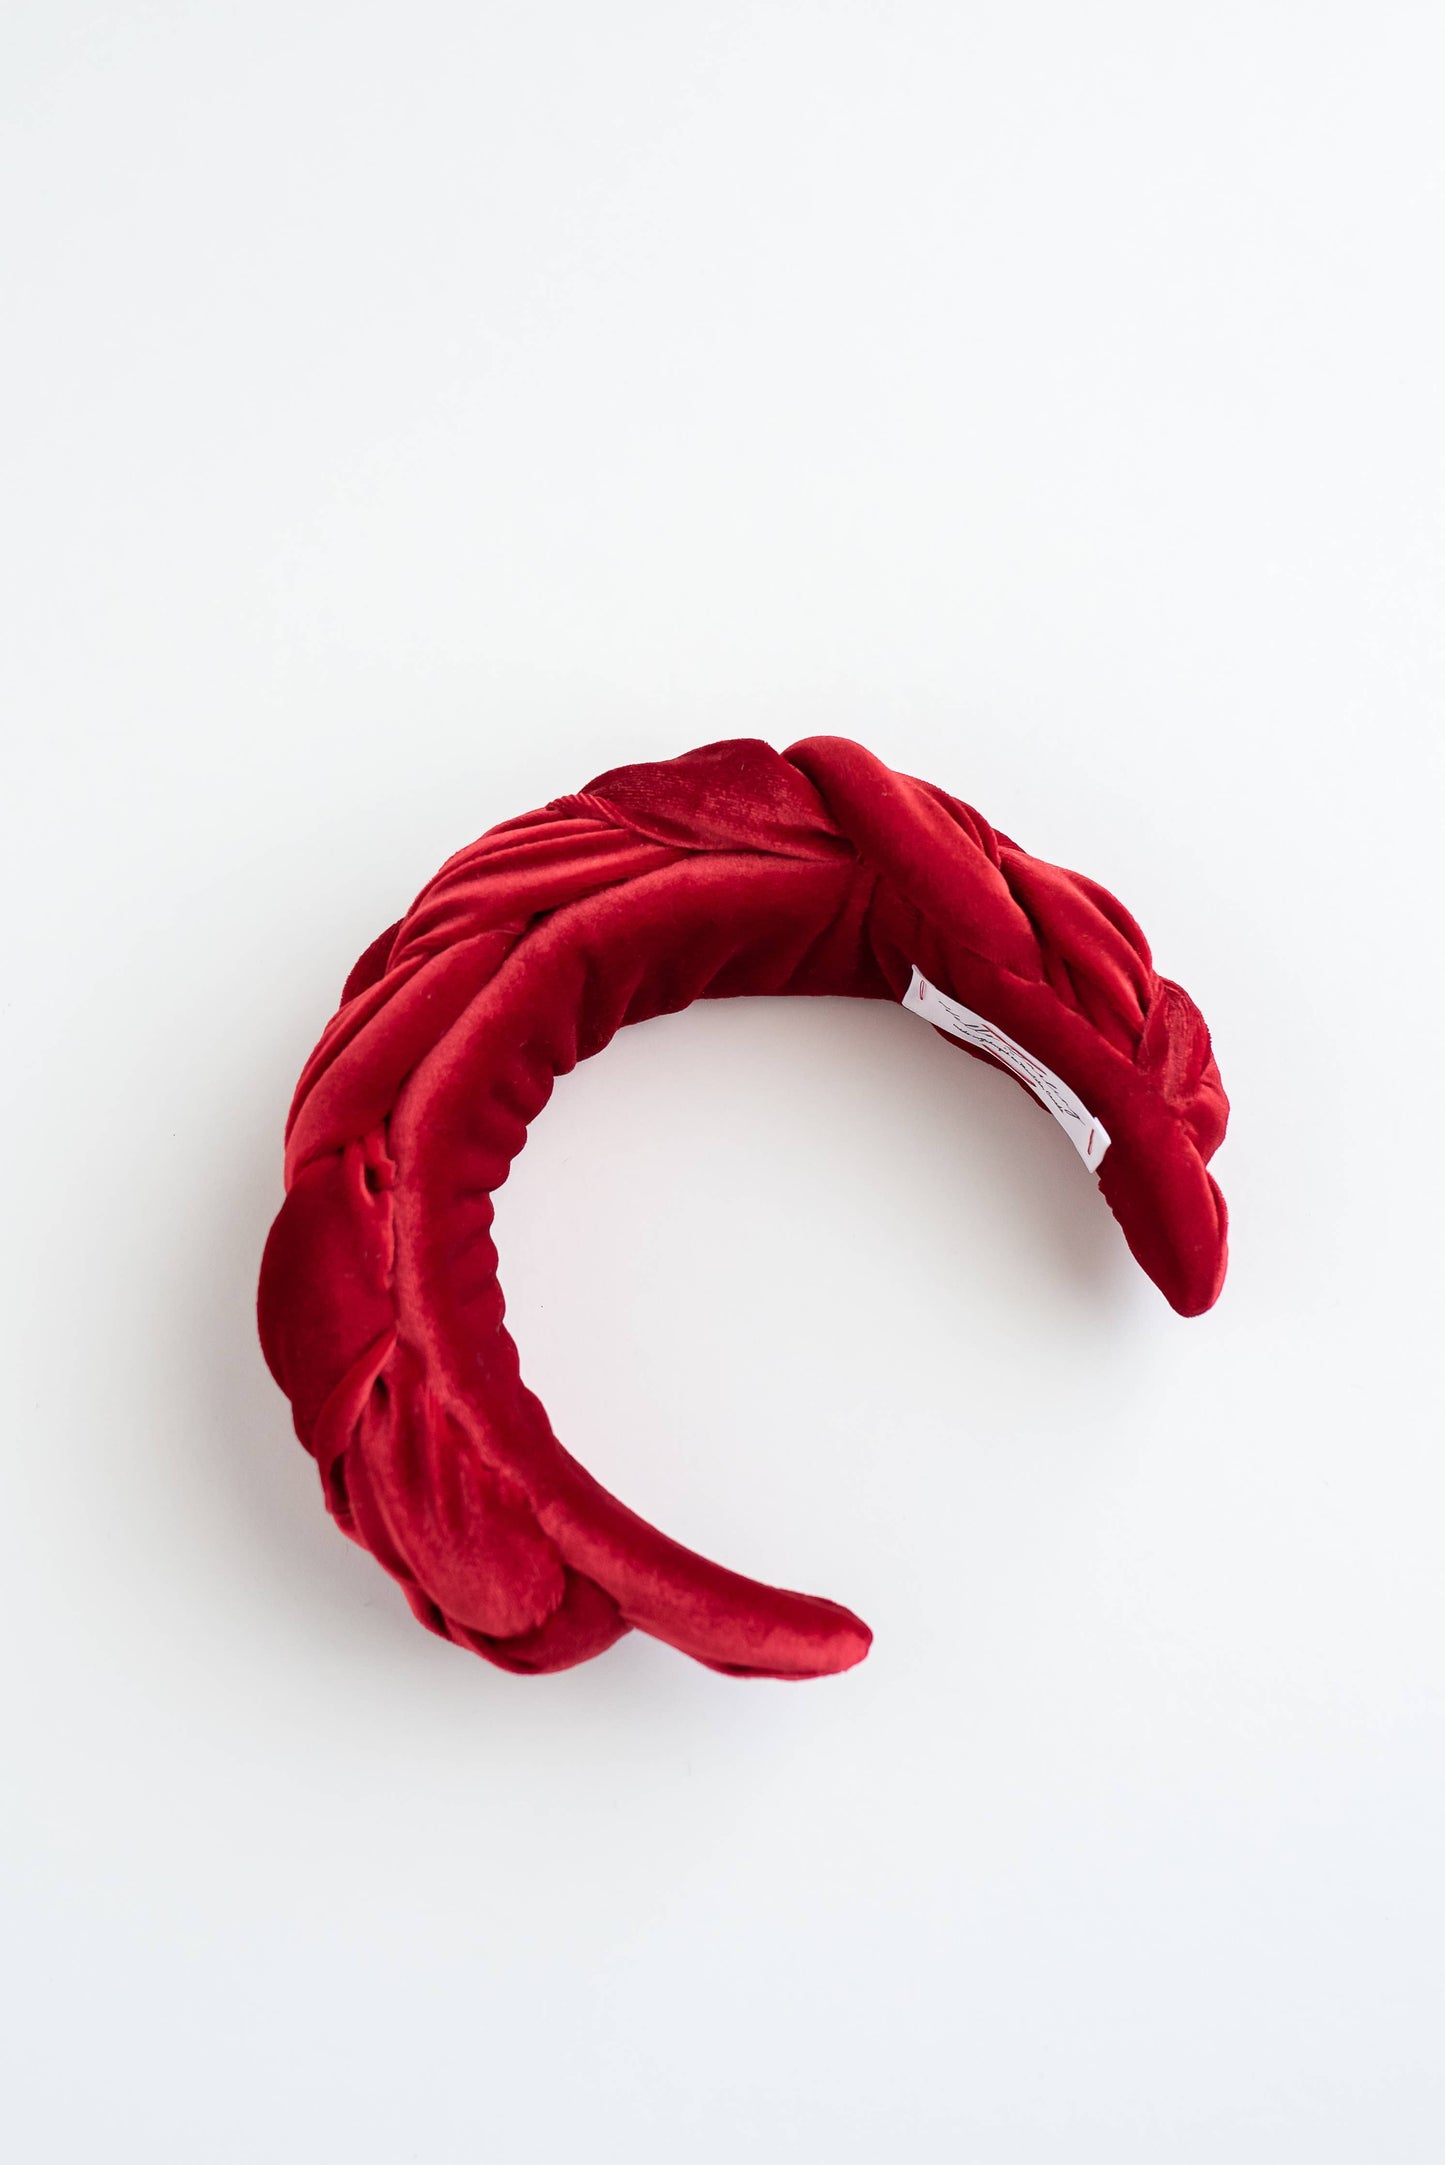 Hello Darling - FRIDA Red Headband